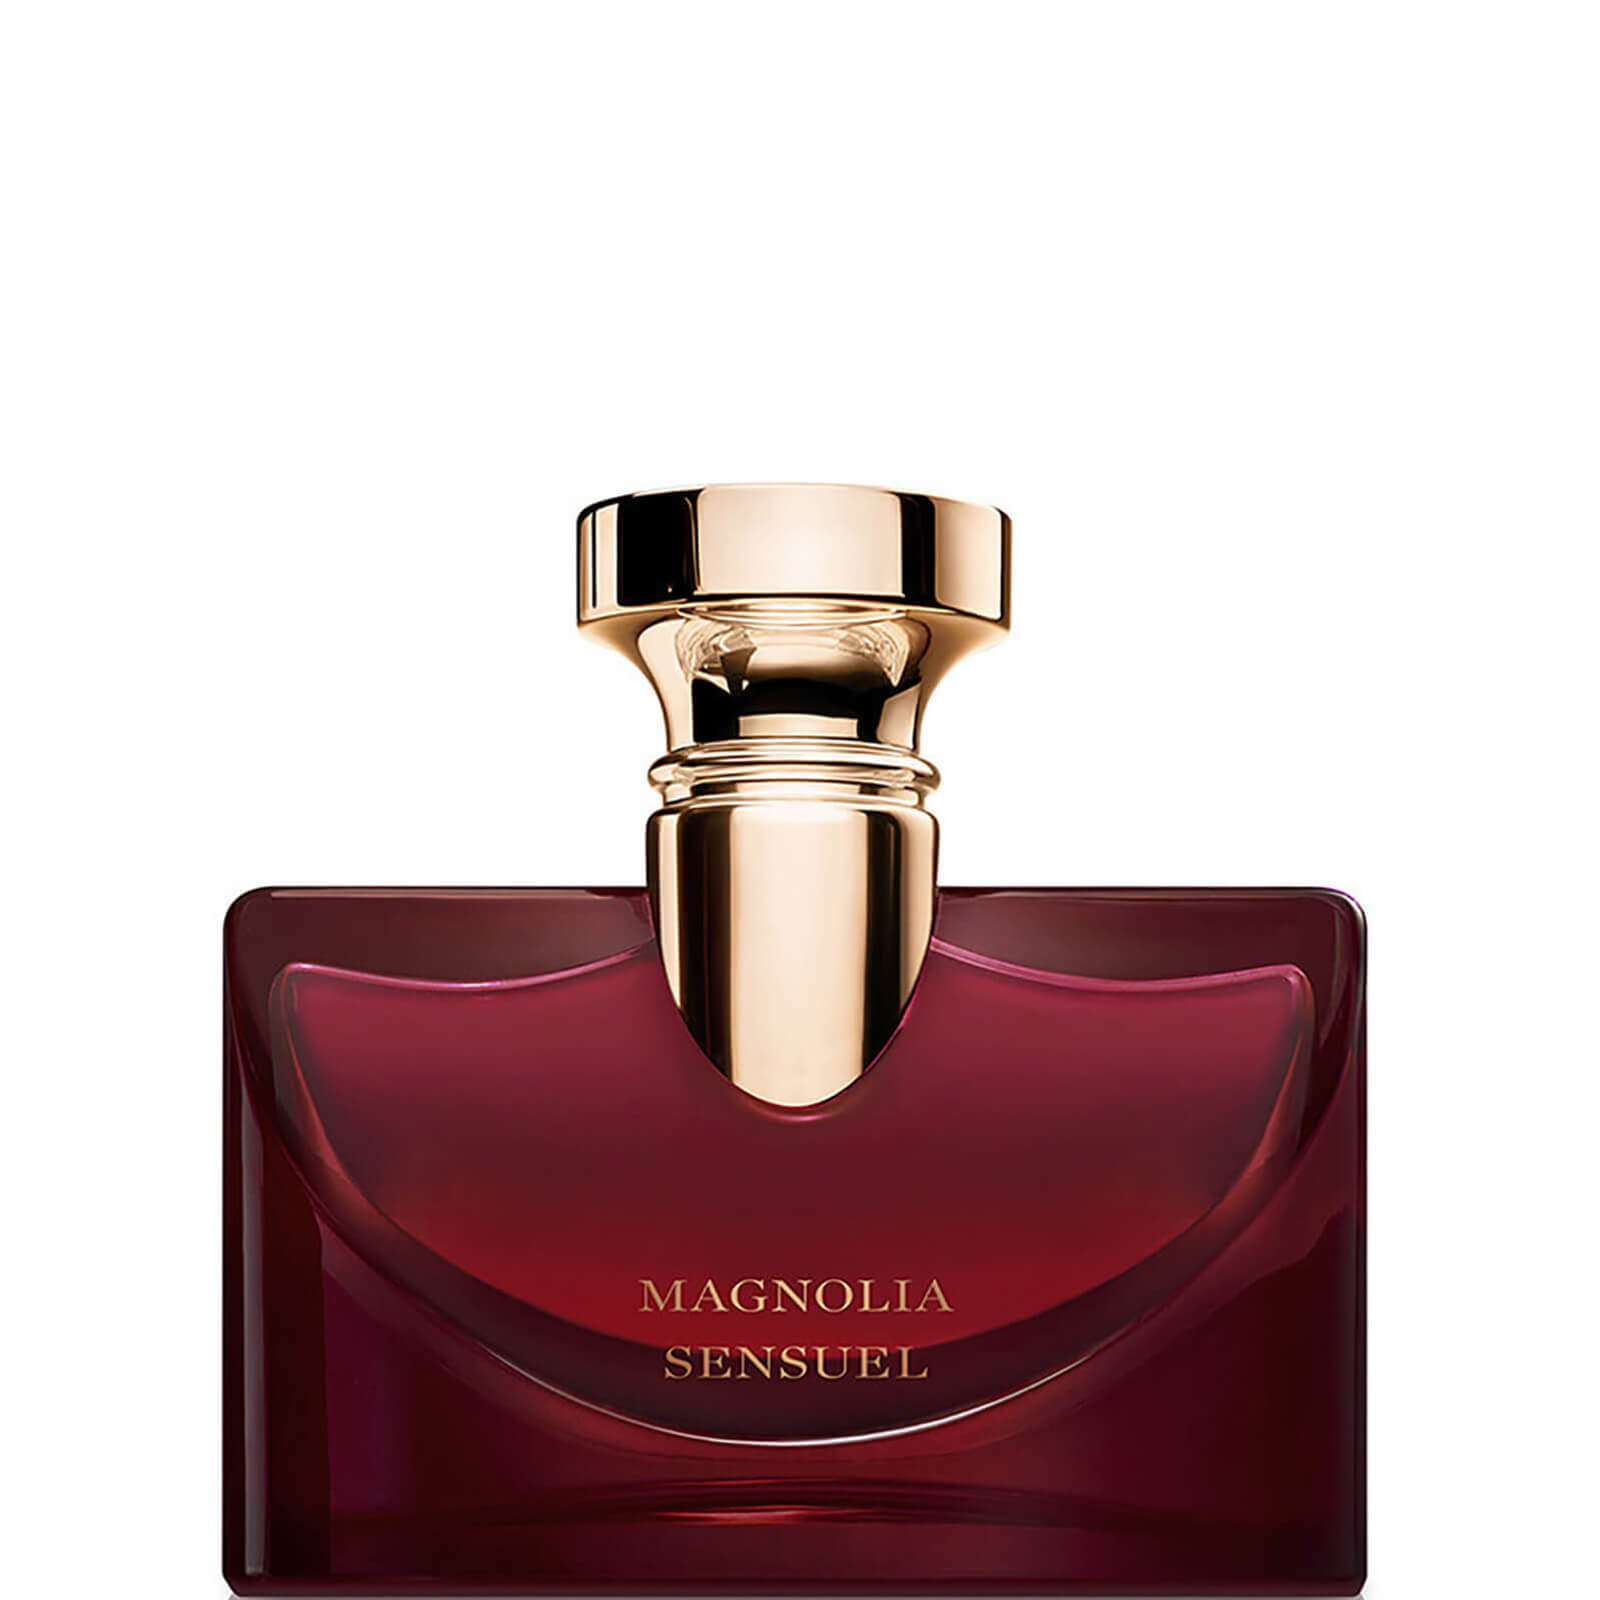 Photos - Women's Fragrance Bvlgari Splendida Magnolia Sensuel Eau De Parfum 50ml 97738 